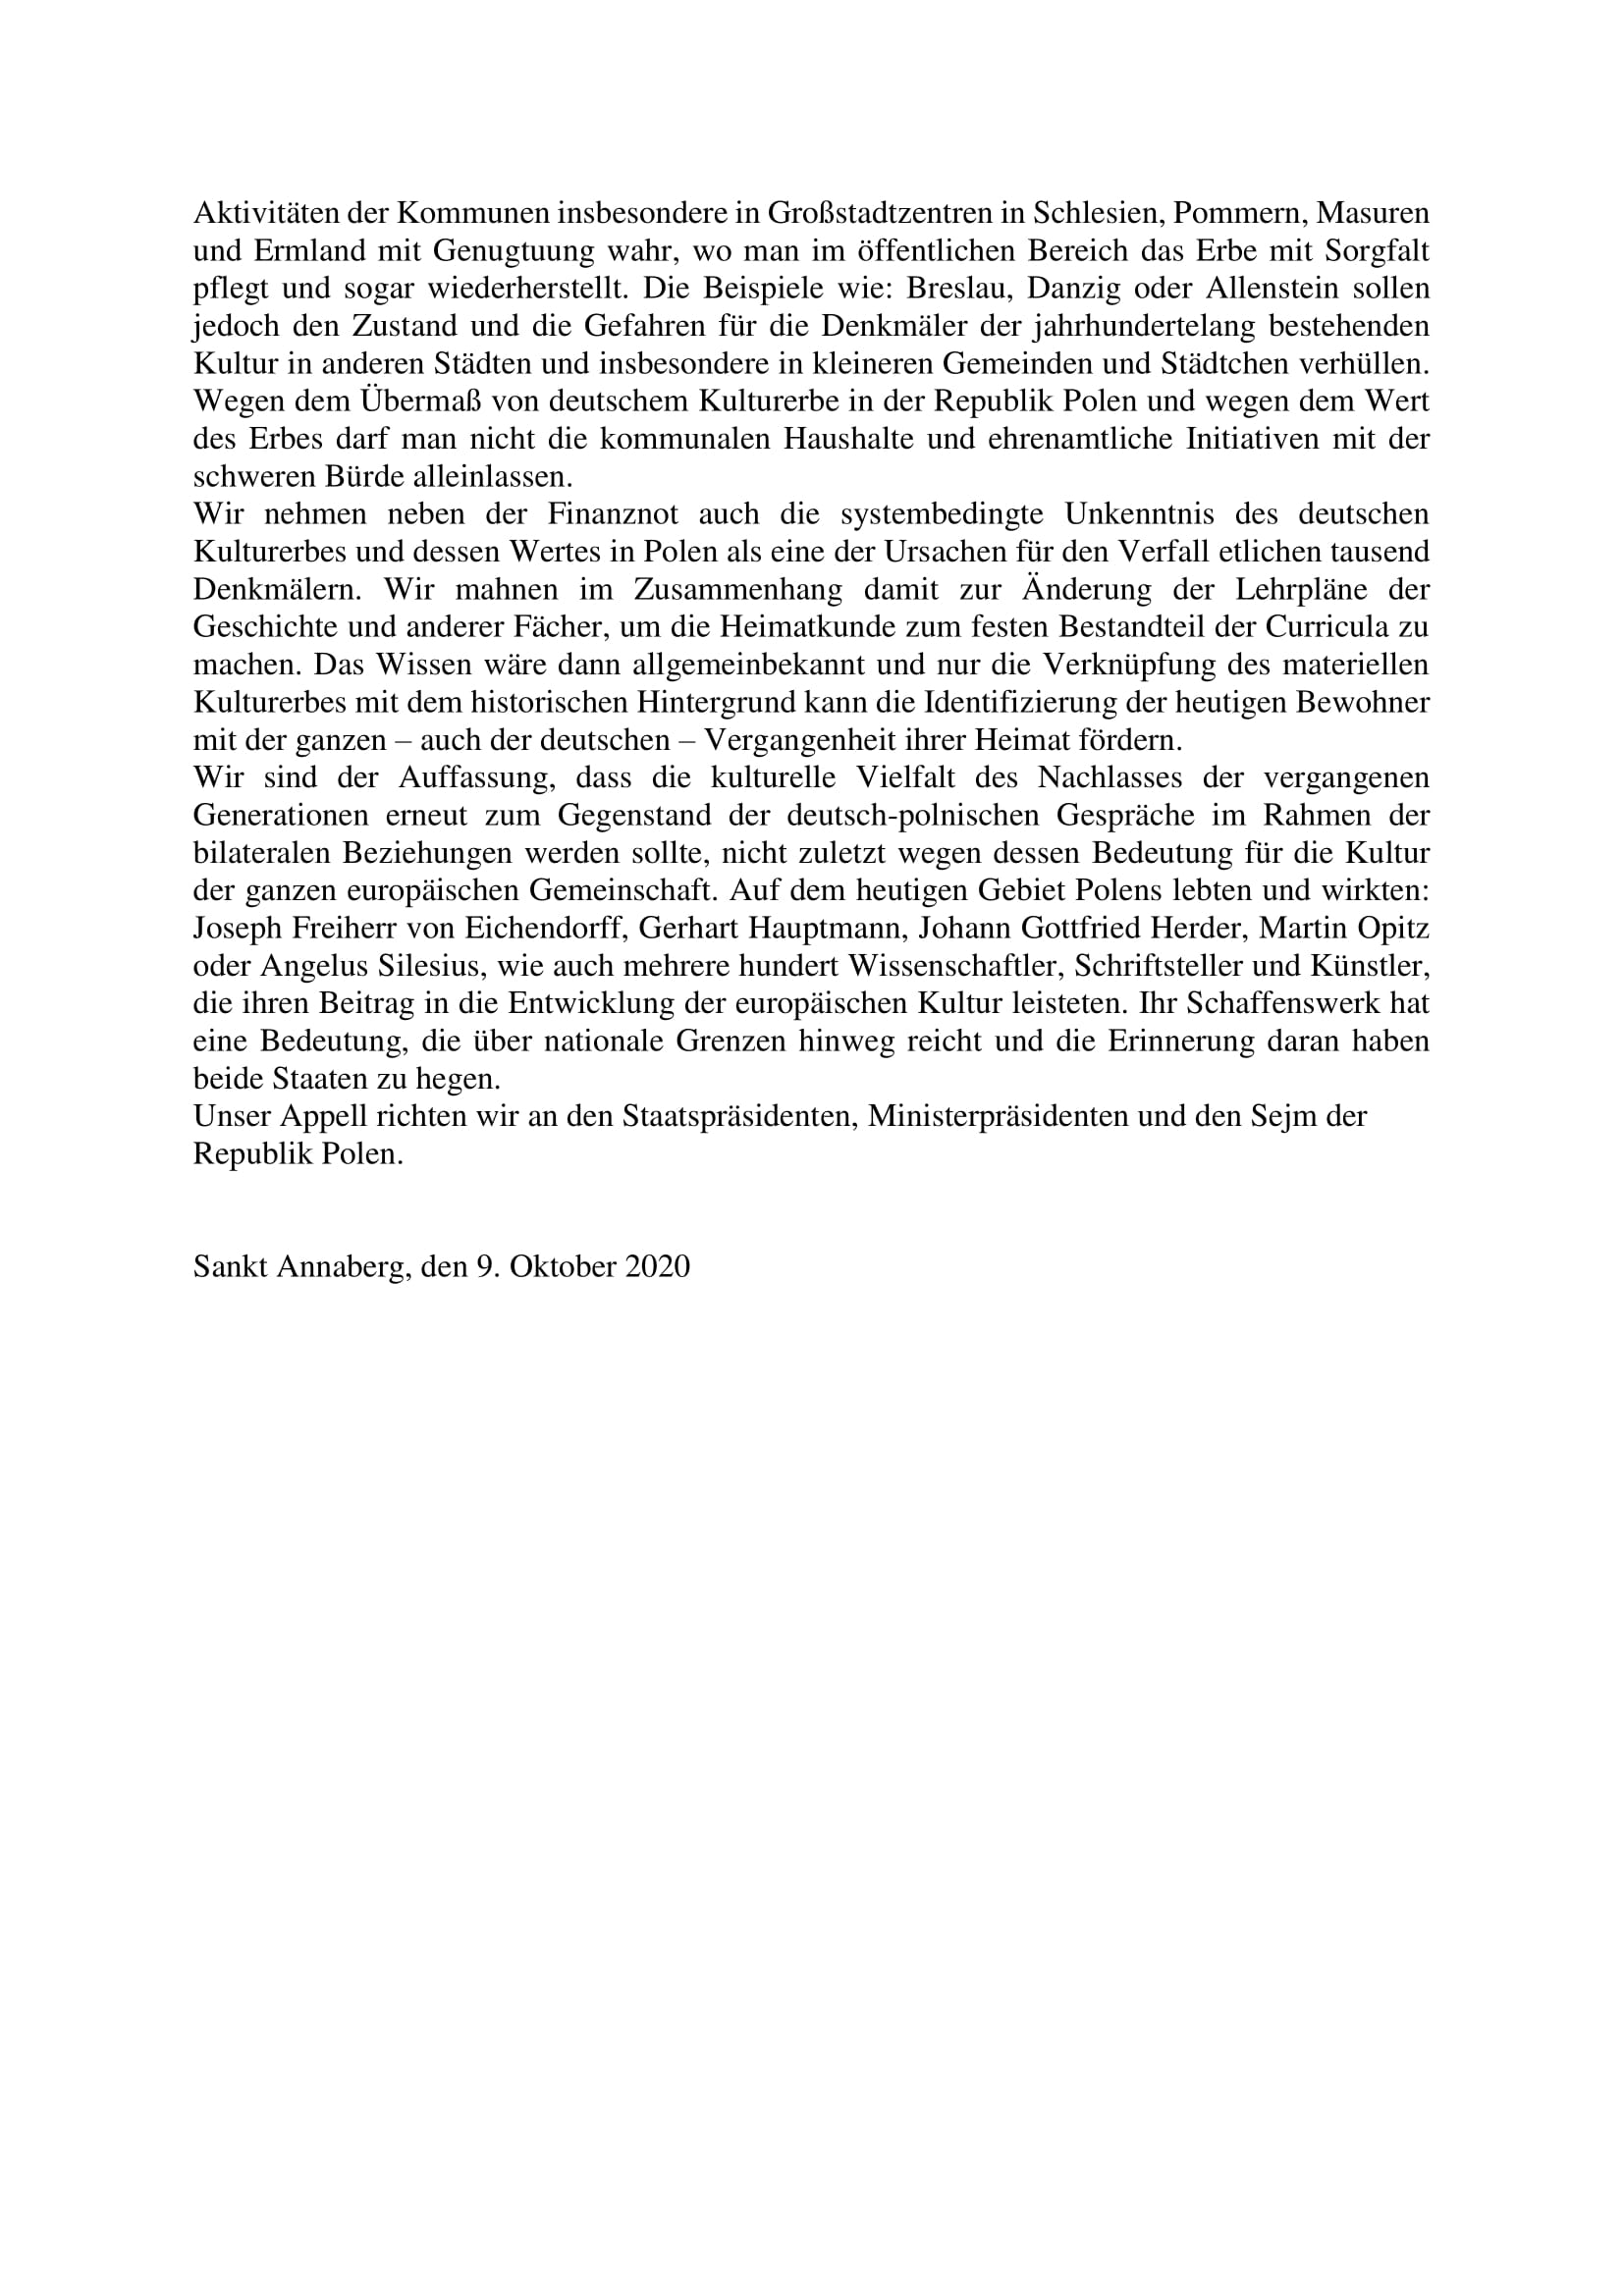 Resolution zum Stand des deutschen Kulturerbes 2 2